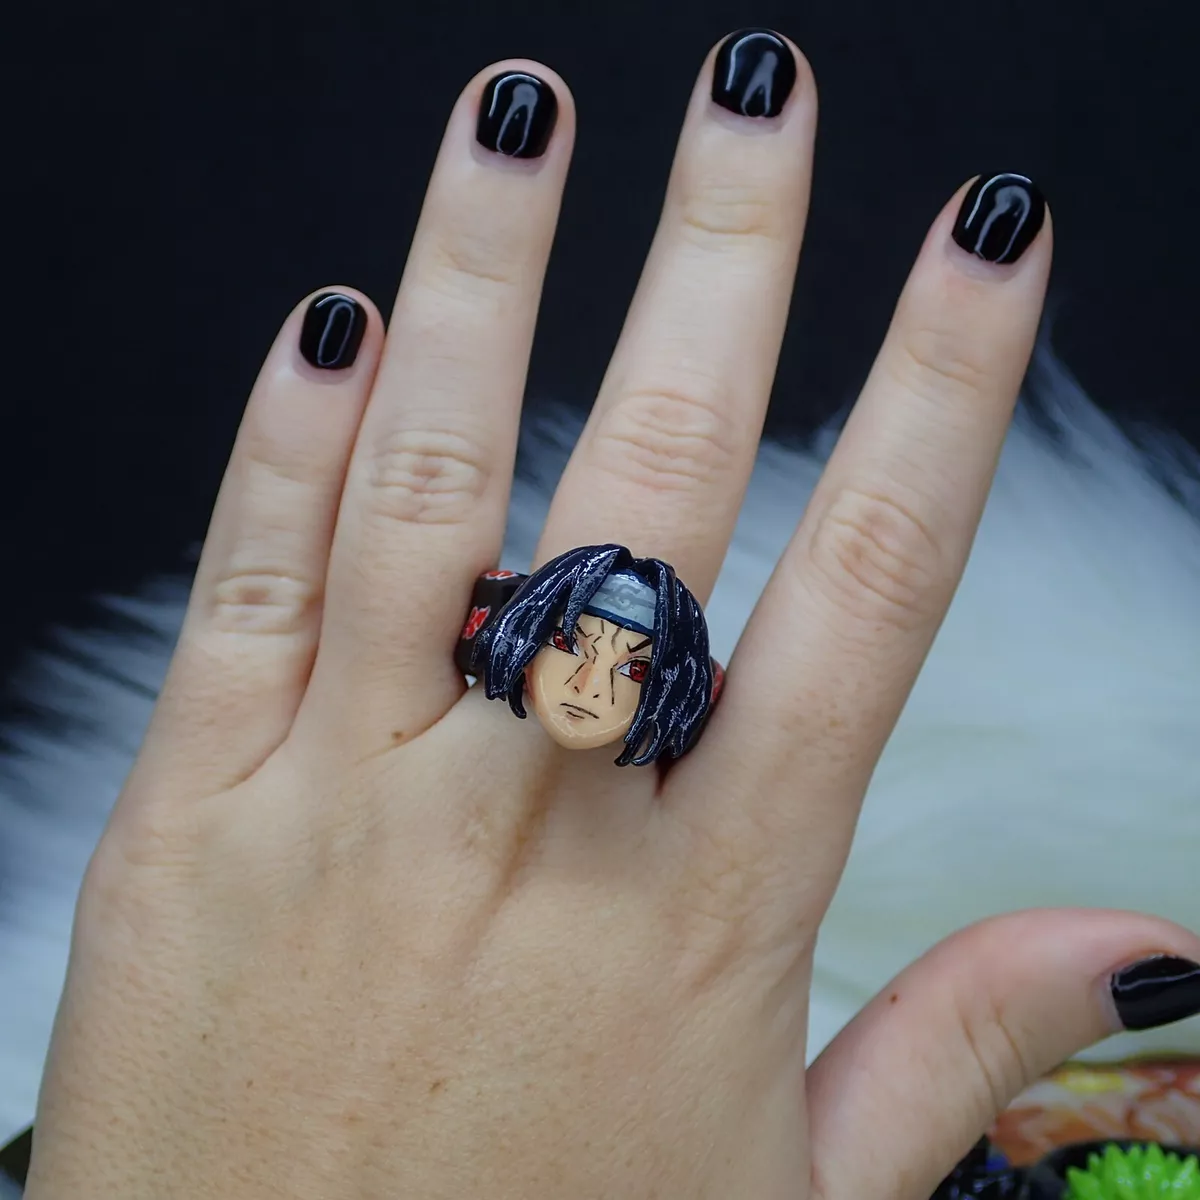 Anime Ring - The Art Custom of Anime Ring